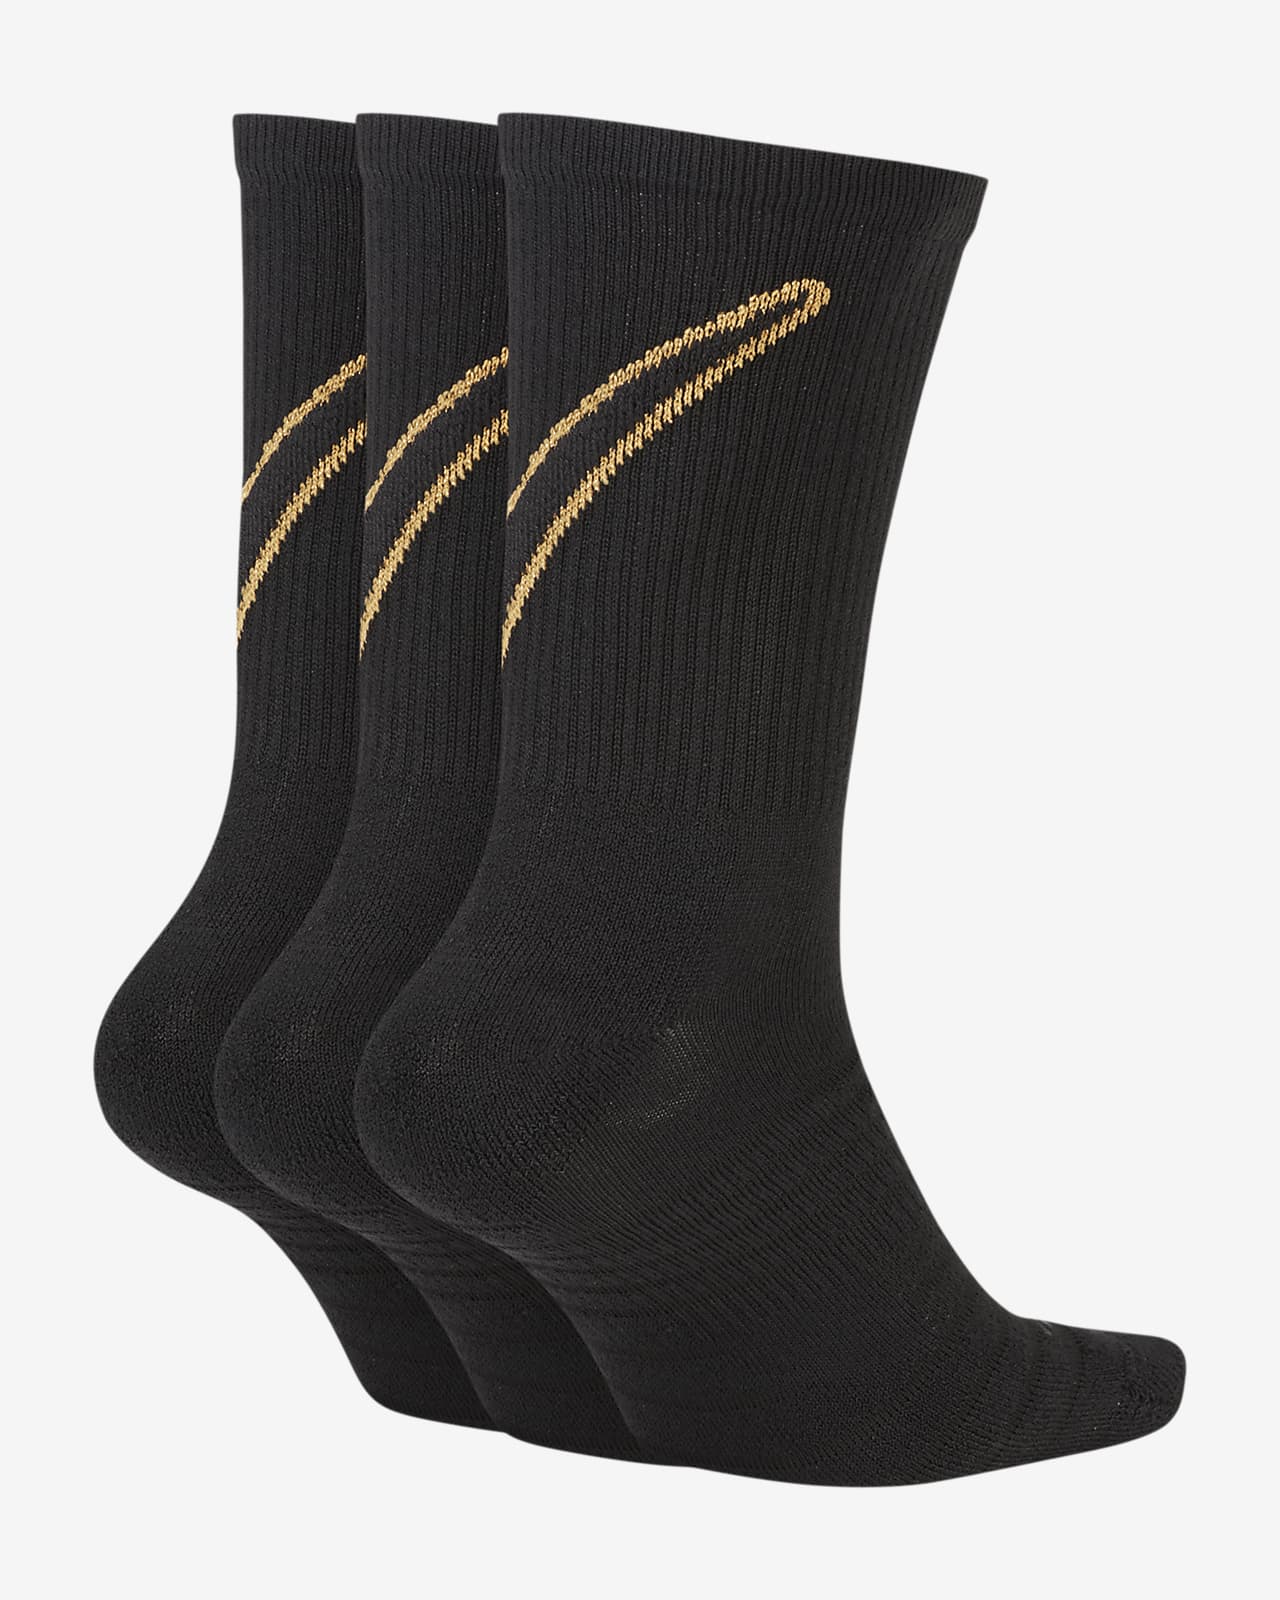 black and gold socks nike